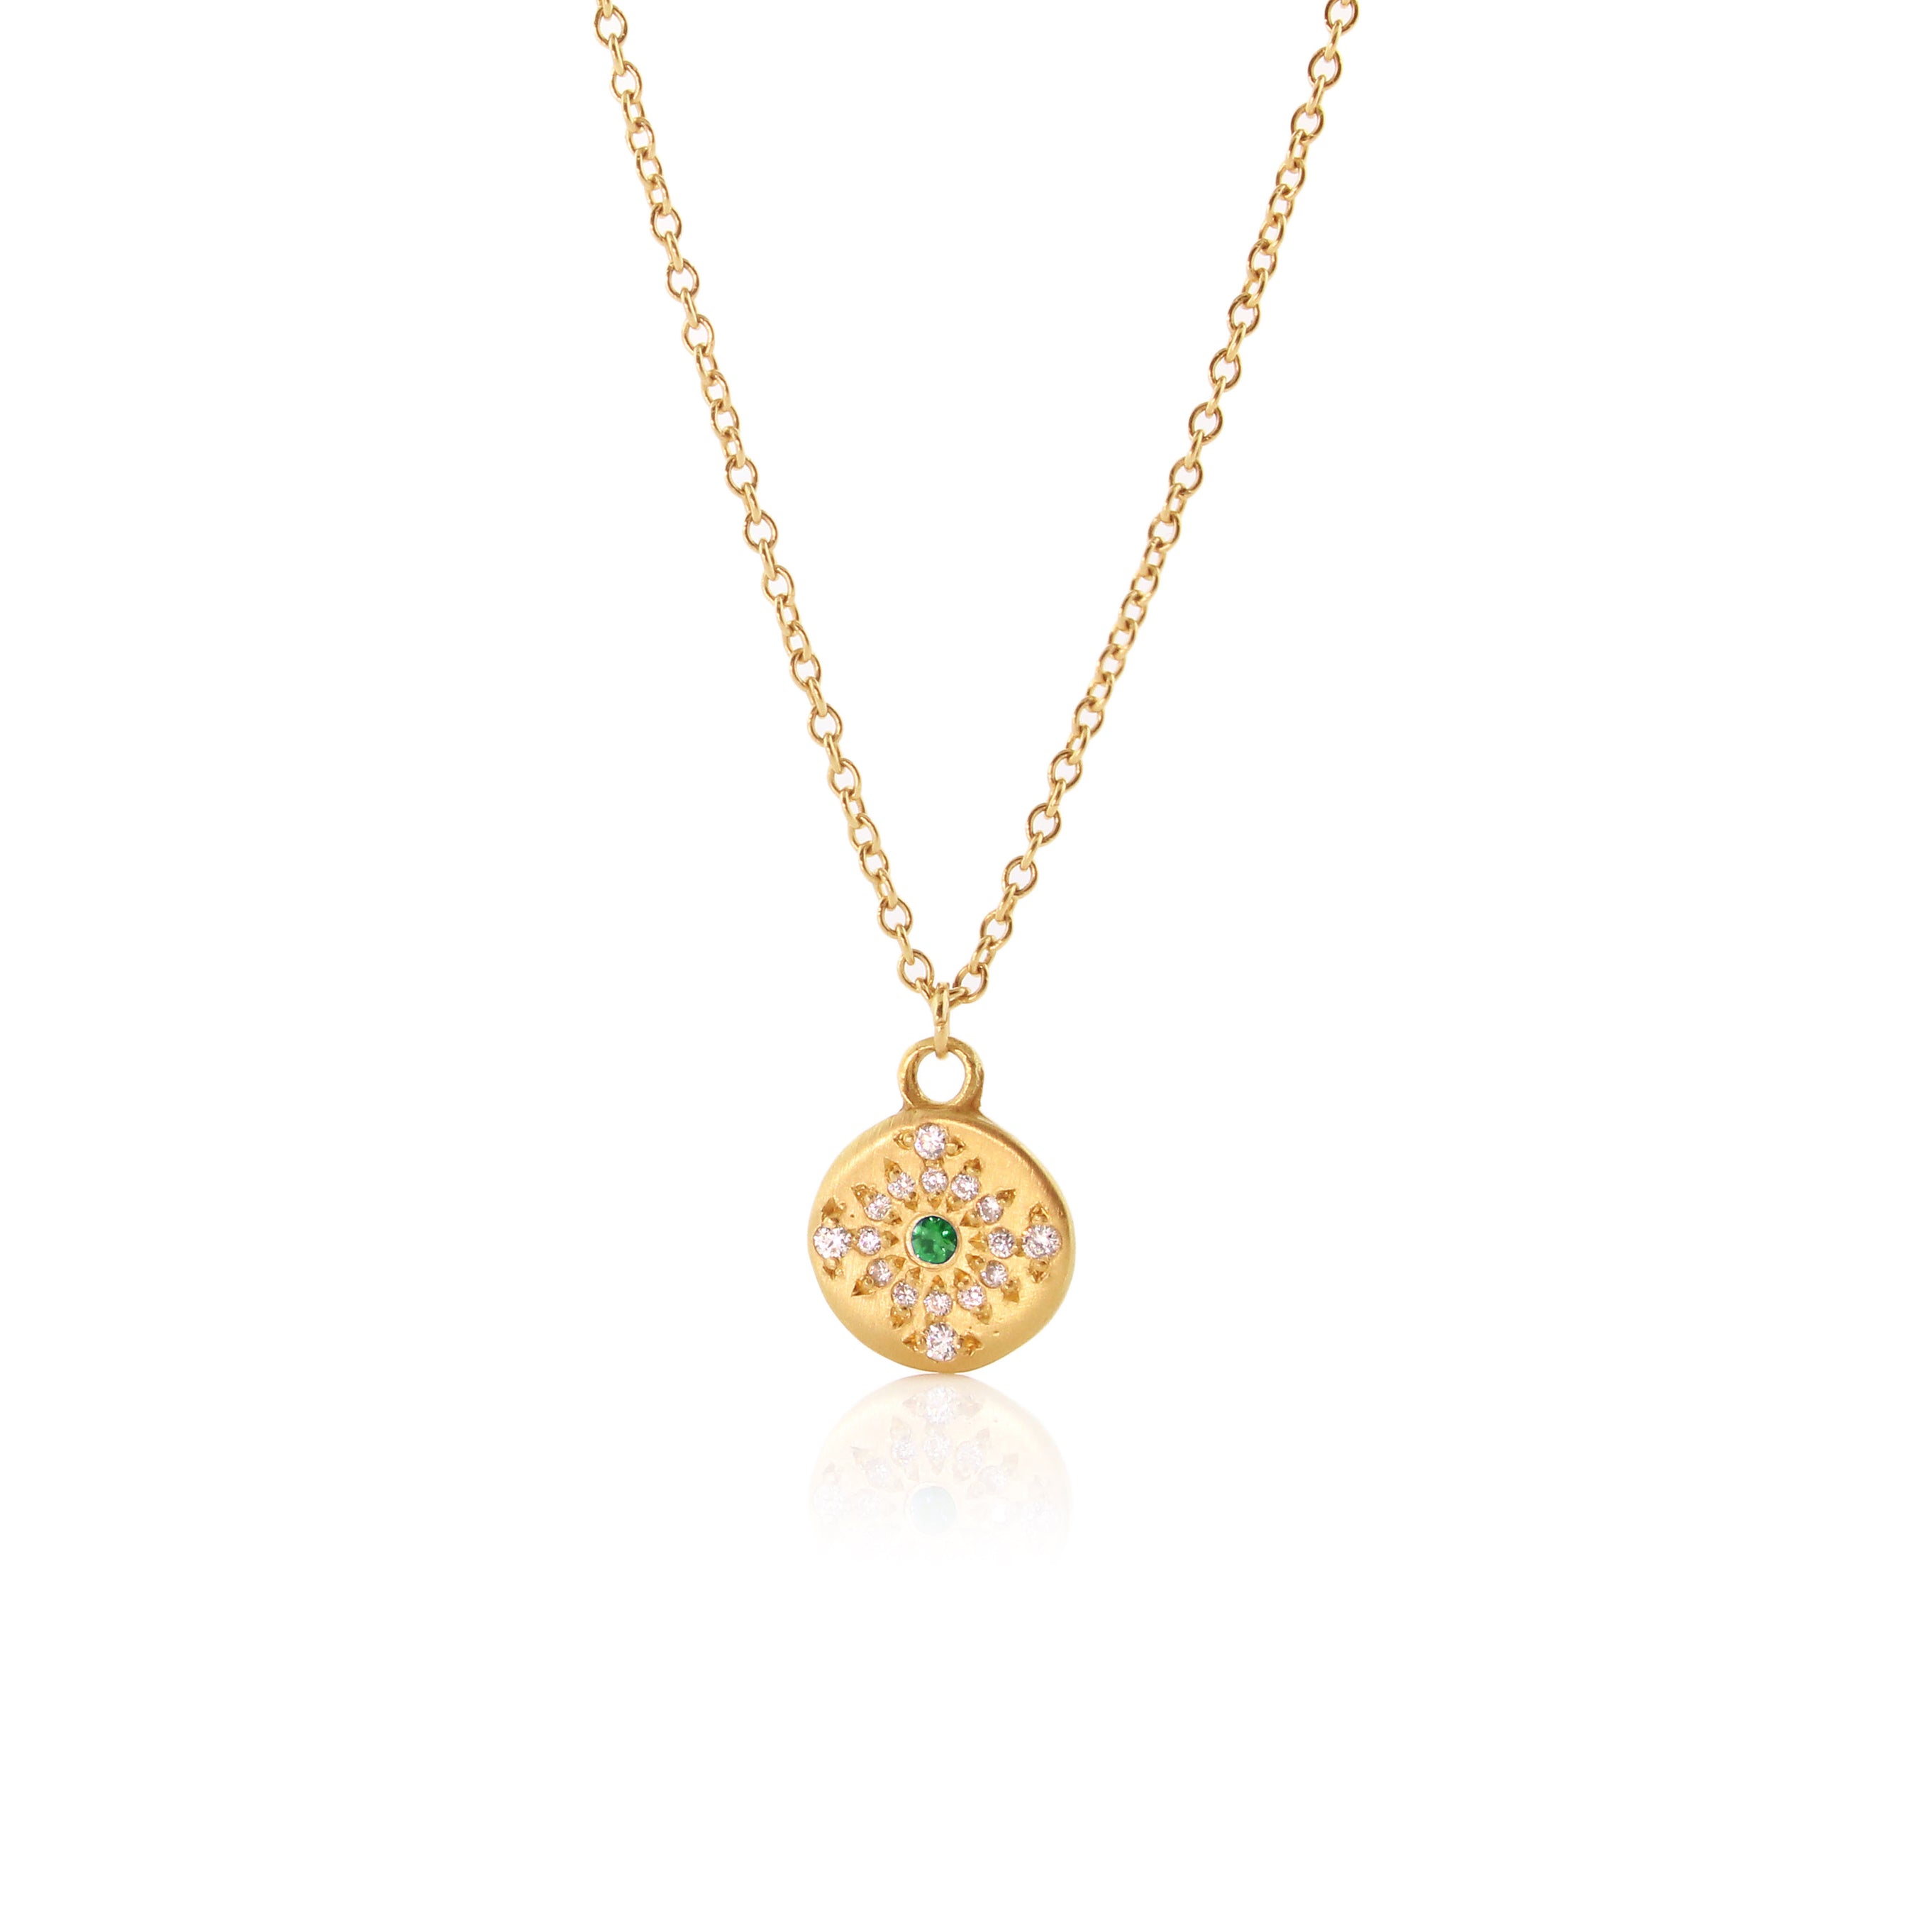 GC CZ Diamond Necklace/Statement Jewelry/Statement Necklace/Elegant Jewelry